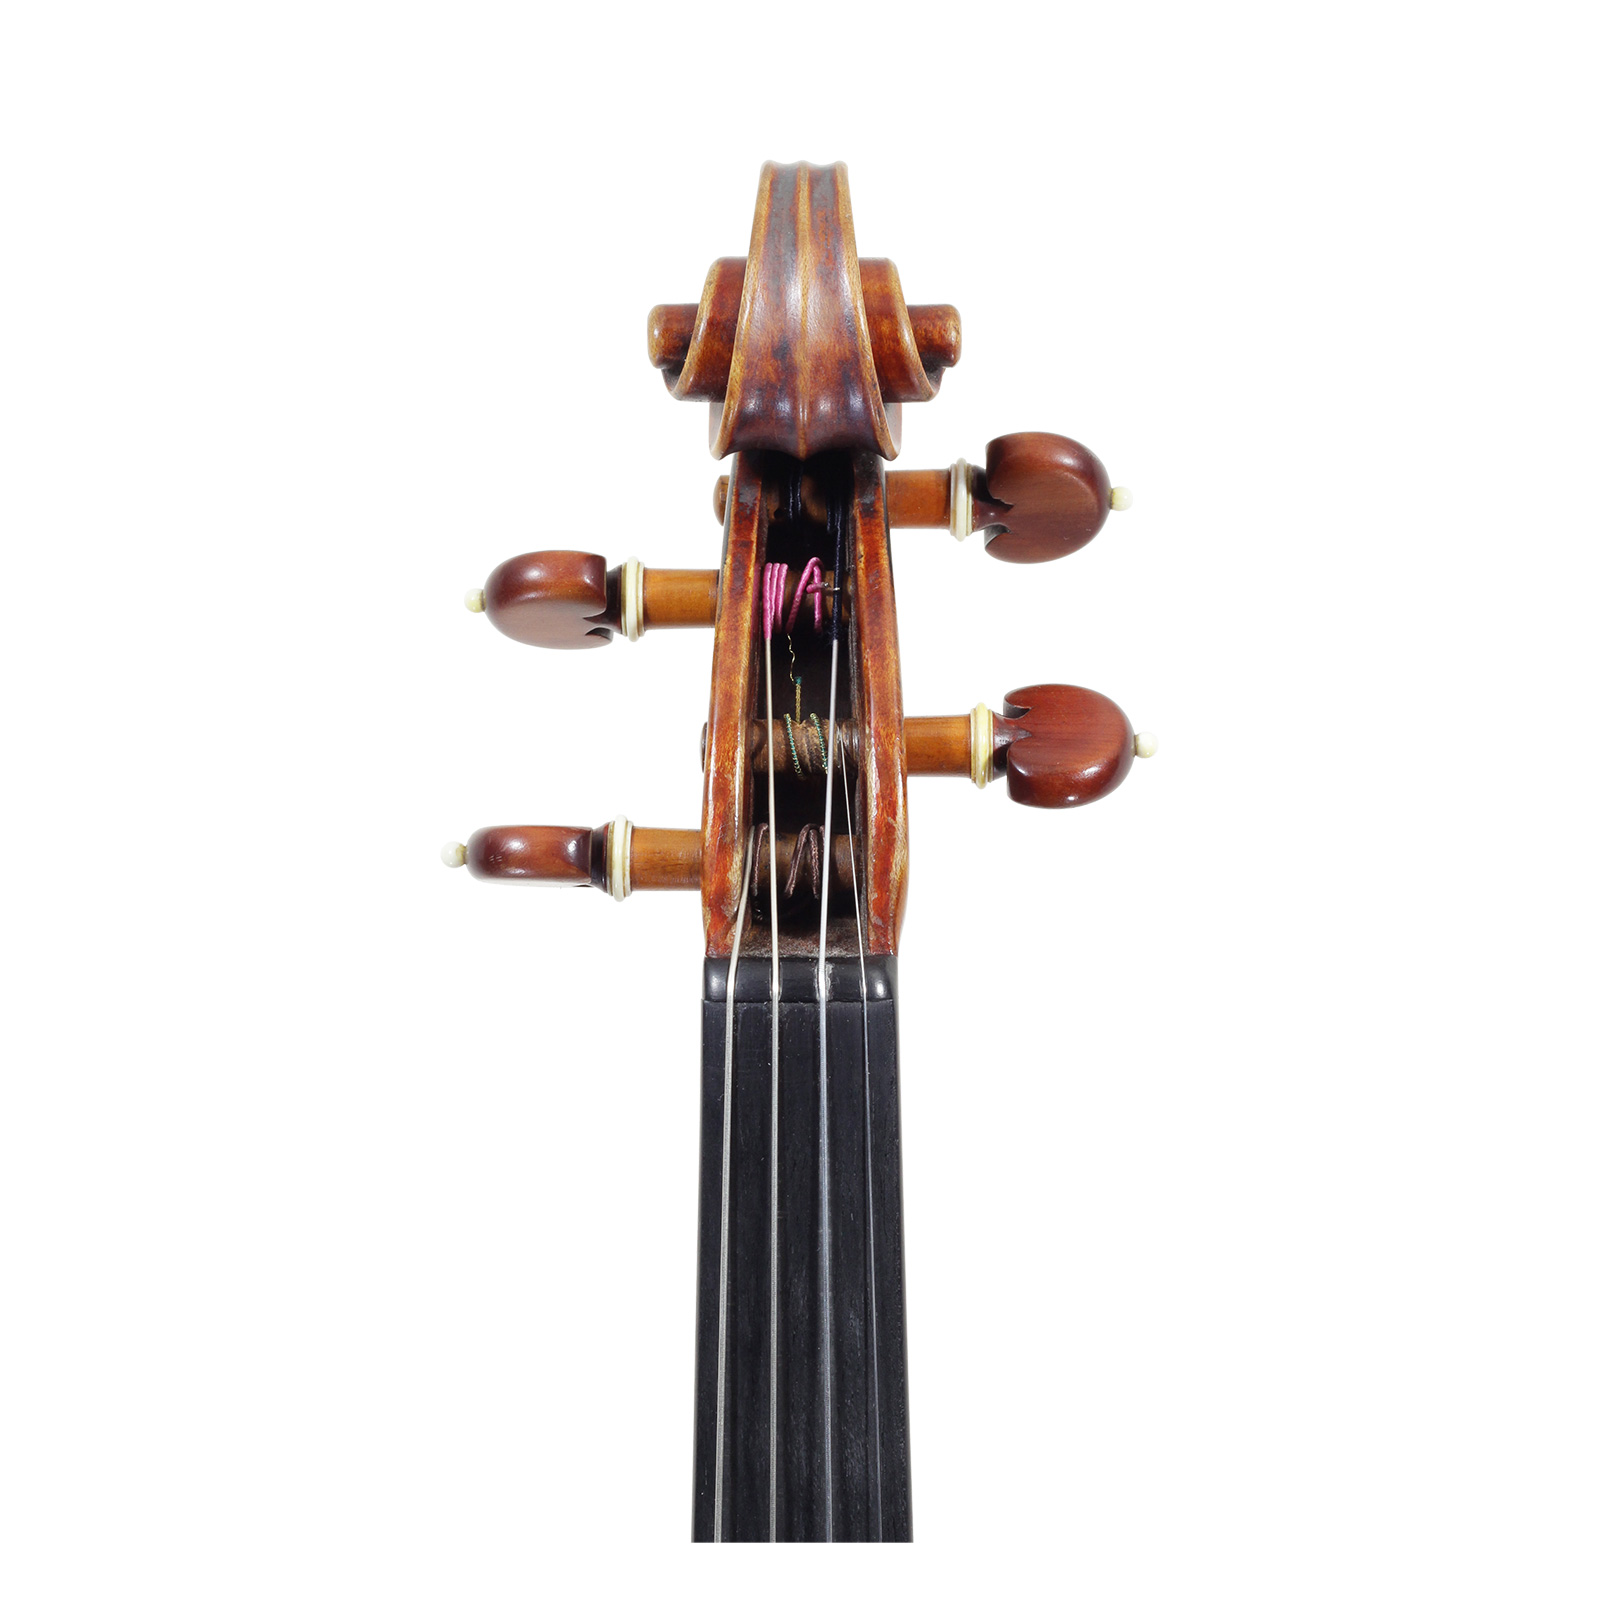 弦楽器専門店 ラルジュ ー販売、鑑定、修理、調整、買取ー バイオリン 